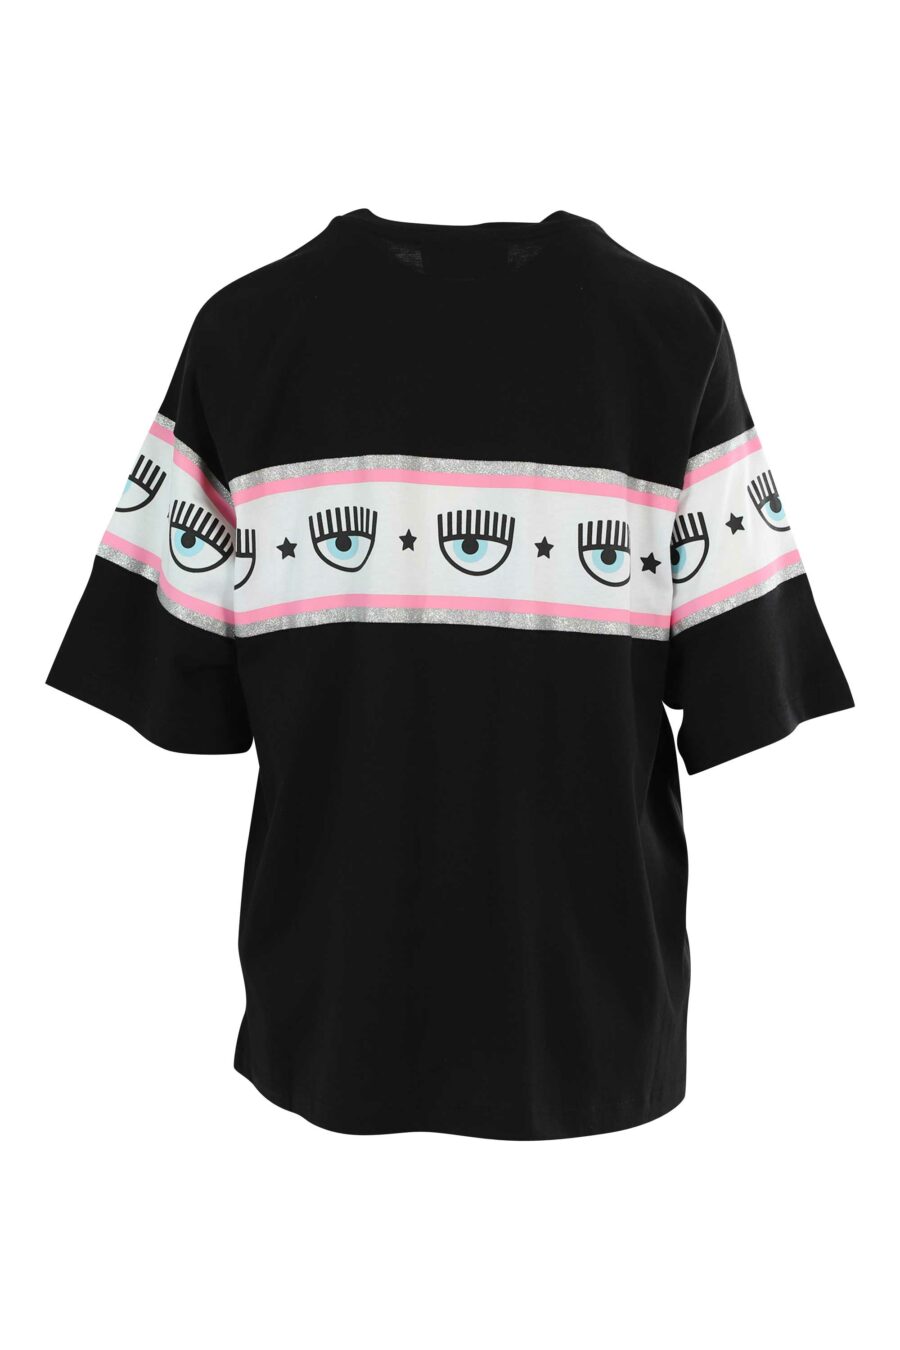 Camiseta negra manga ancha con logo ojo en cinta - 8052672419521 2